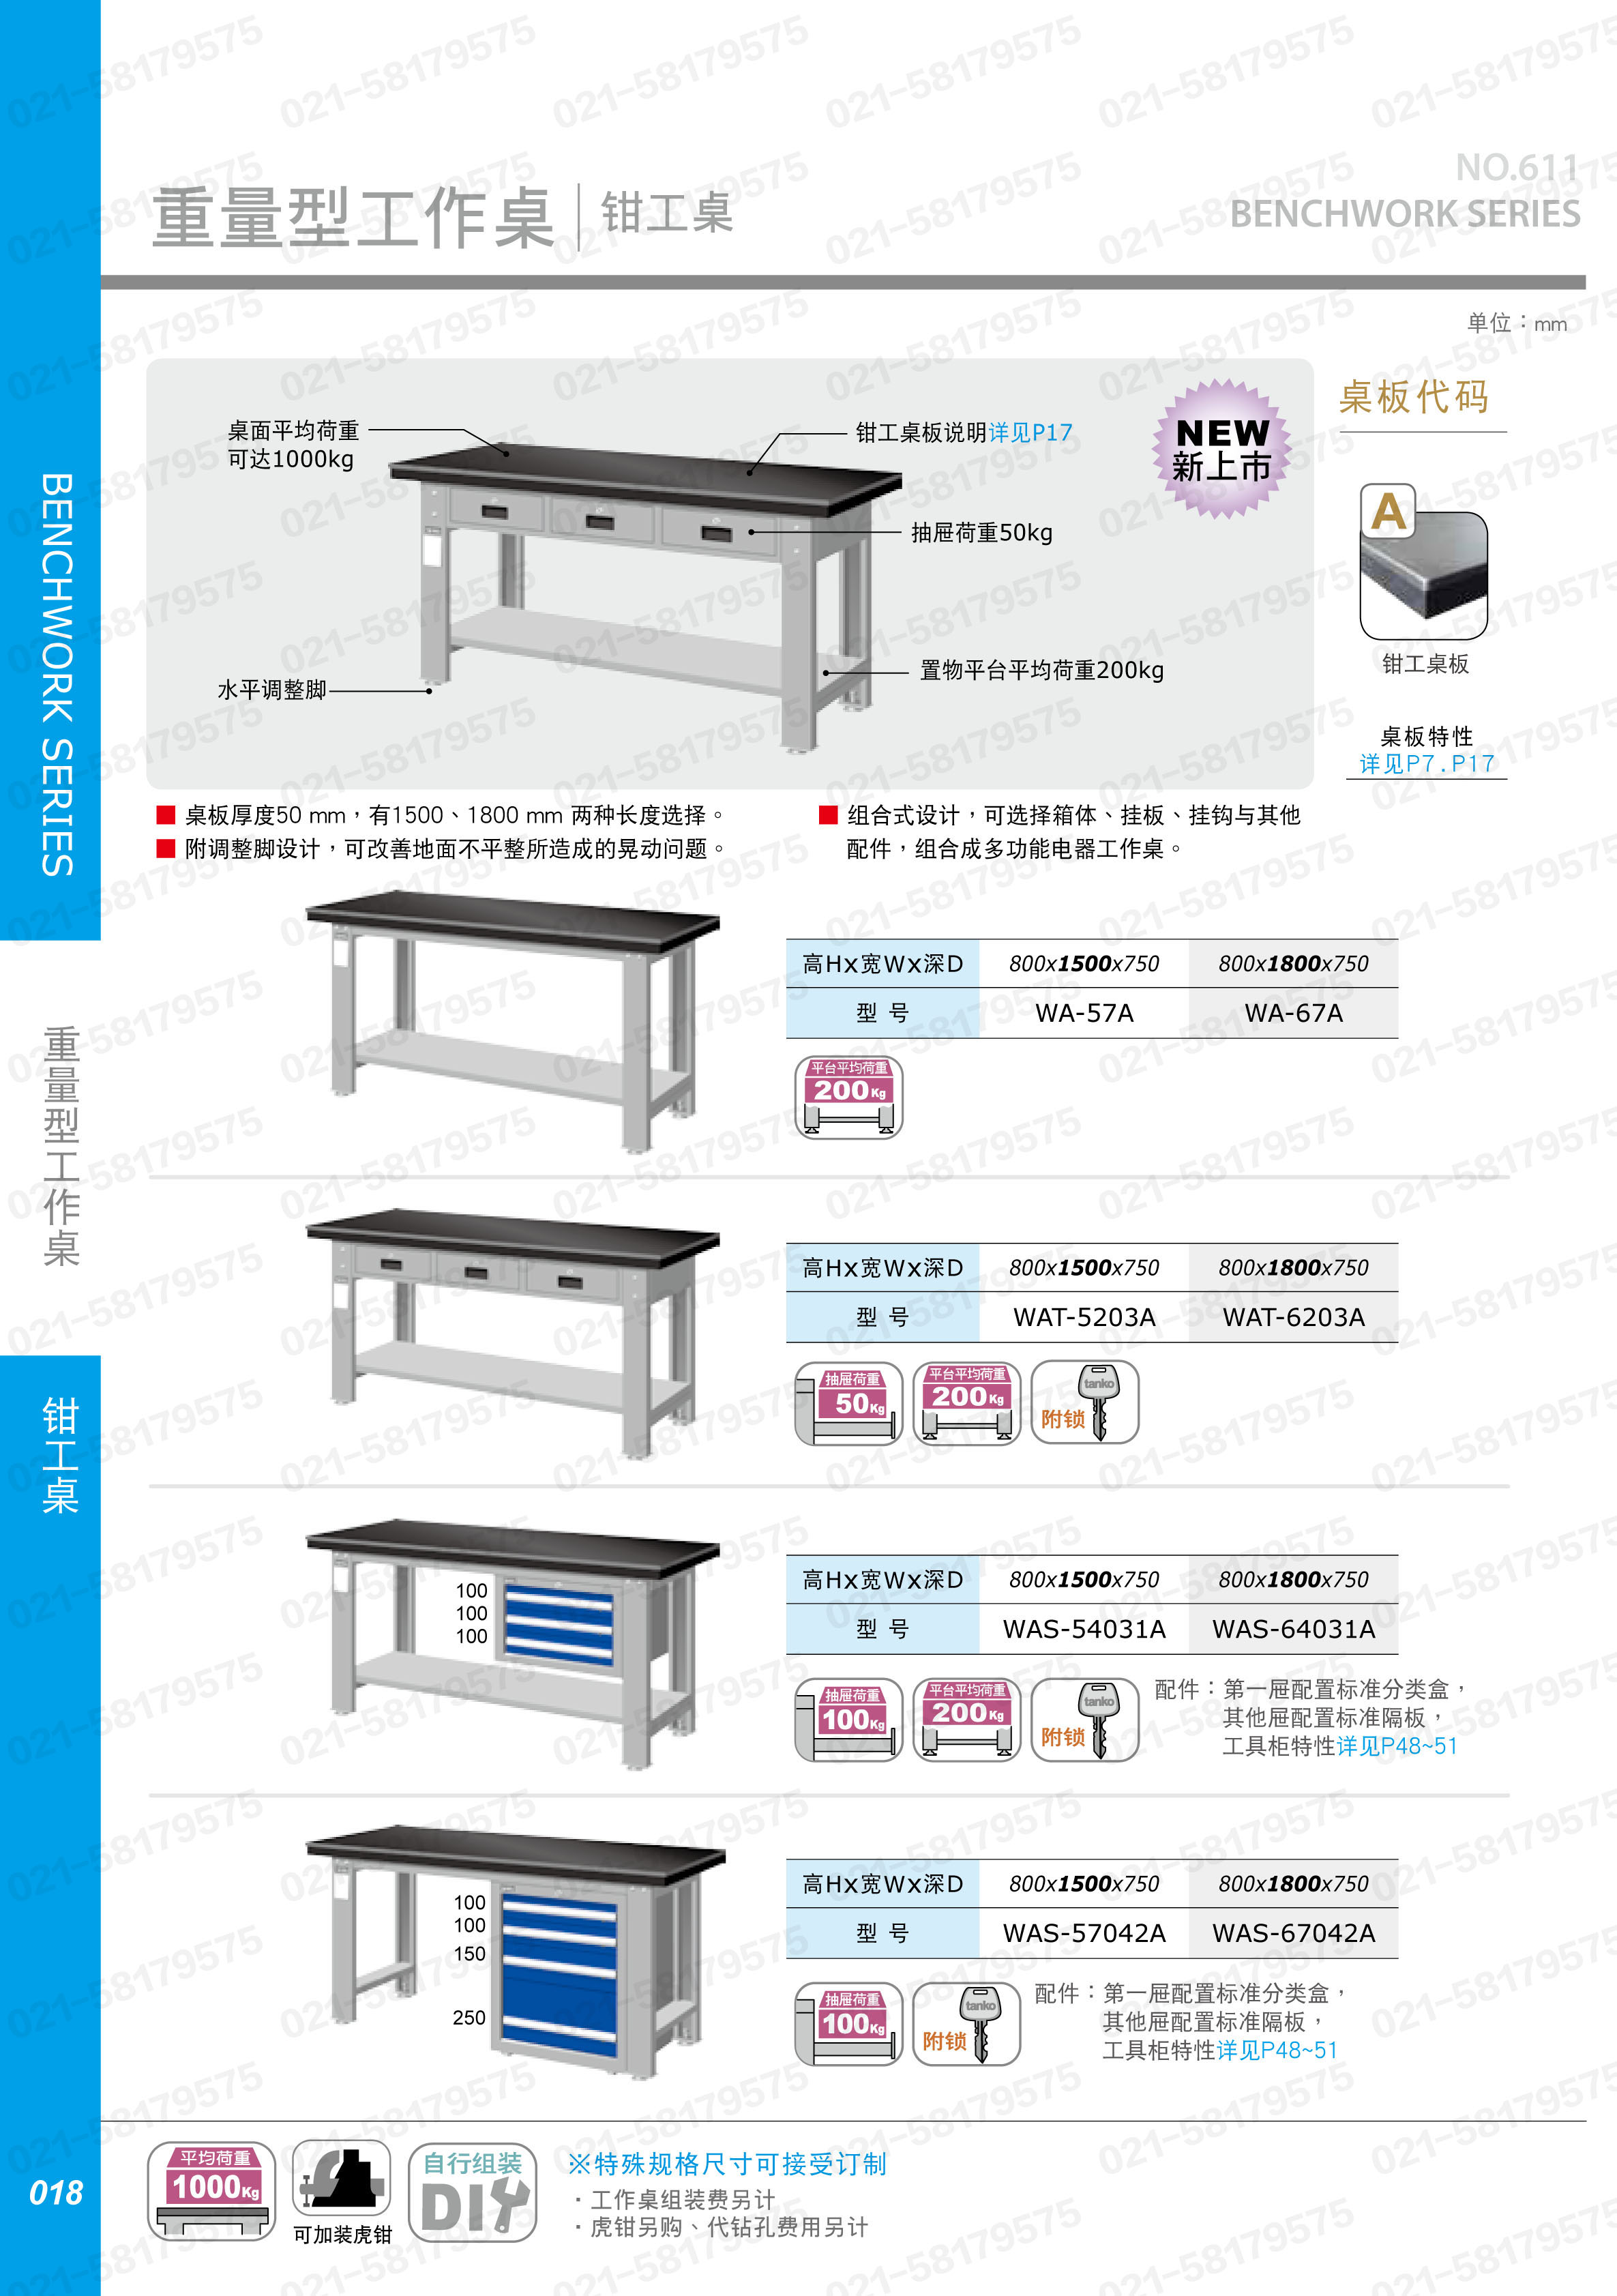 重型工作桌1800×750×800mm平均承重1吨耐磨桌板 横置3个抽屉,WAT-6203F,3M0883